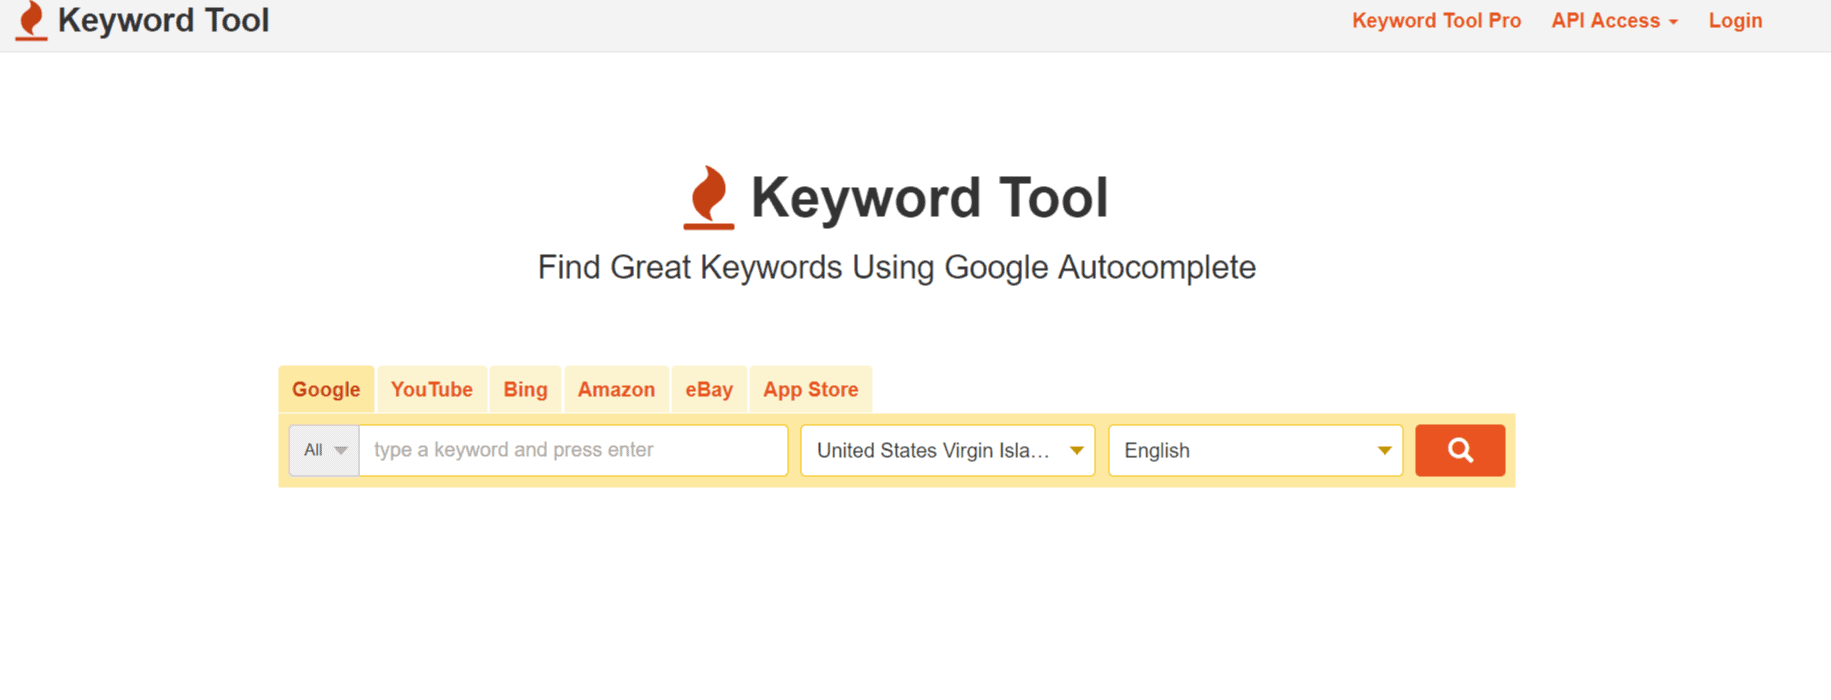 Google-Keyword-Tool-WordPress-SEO-Tools